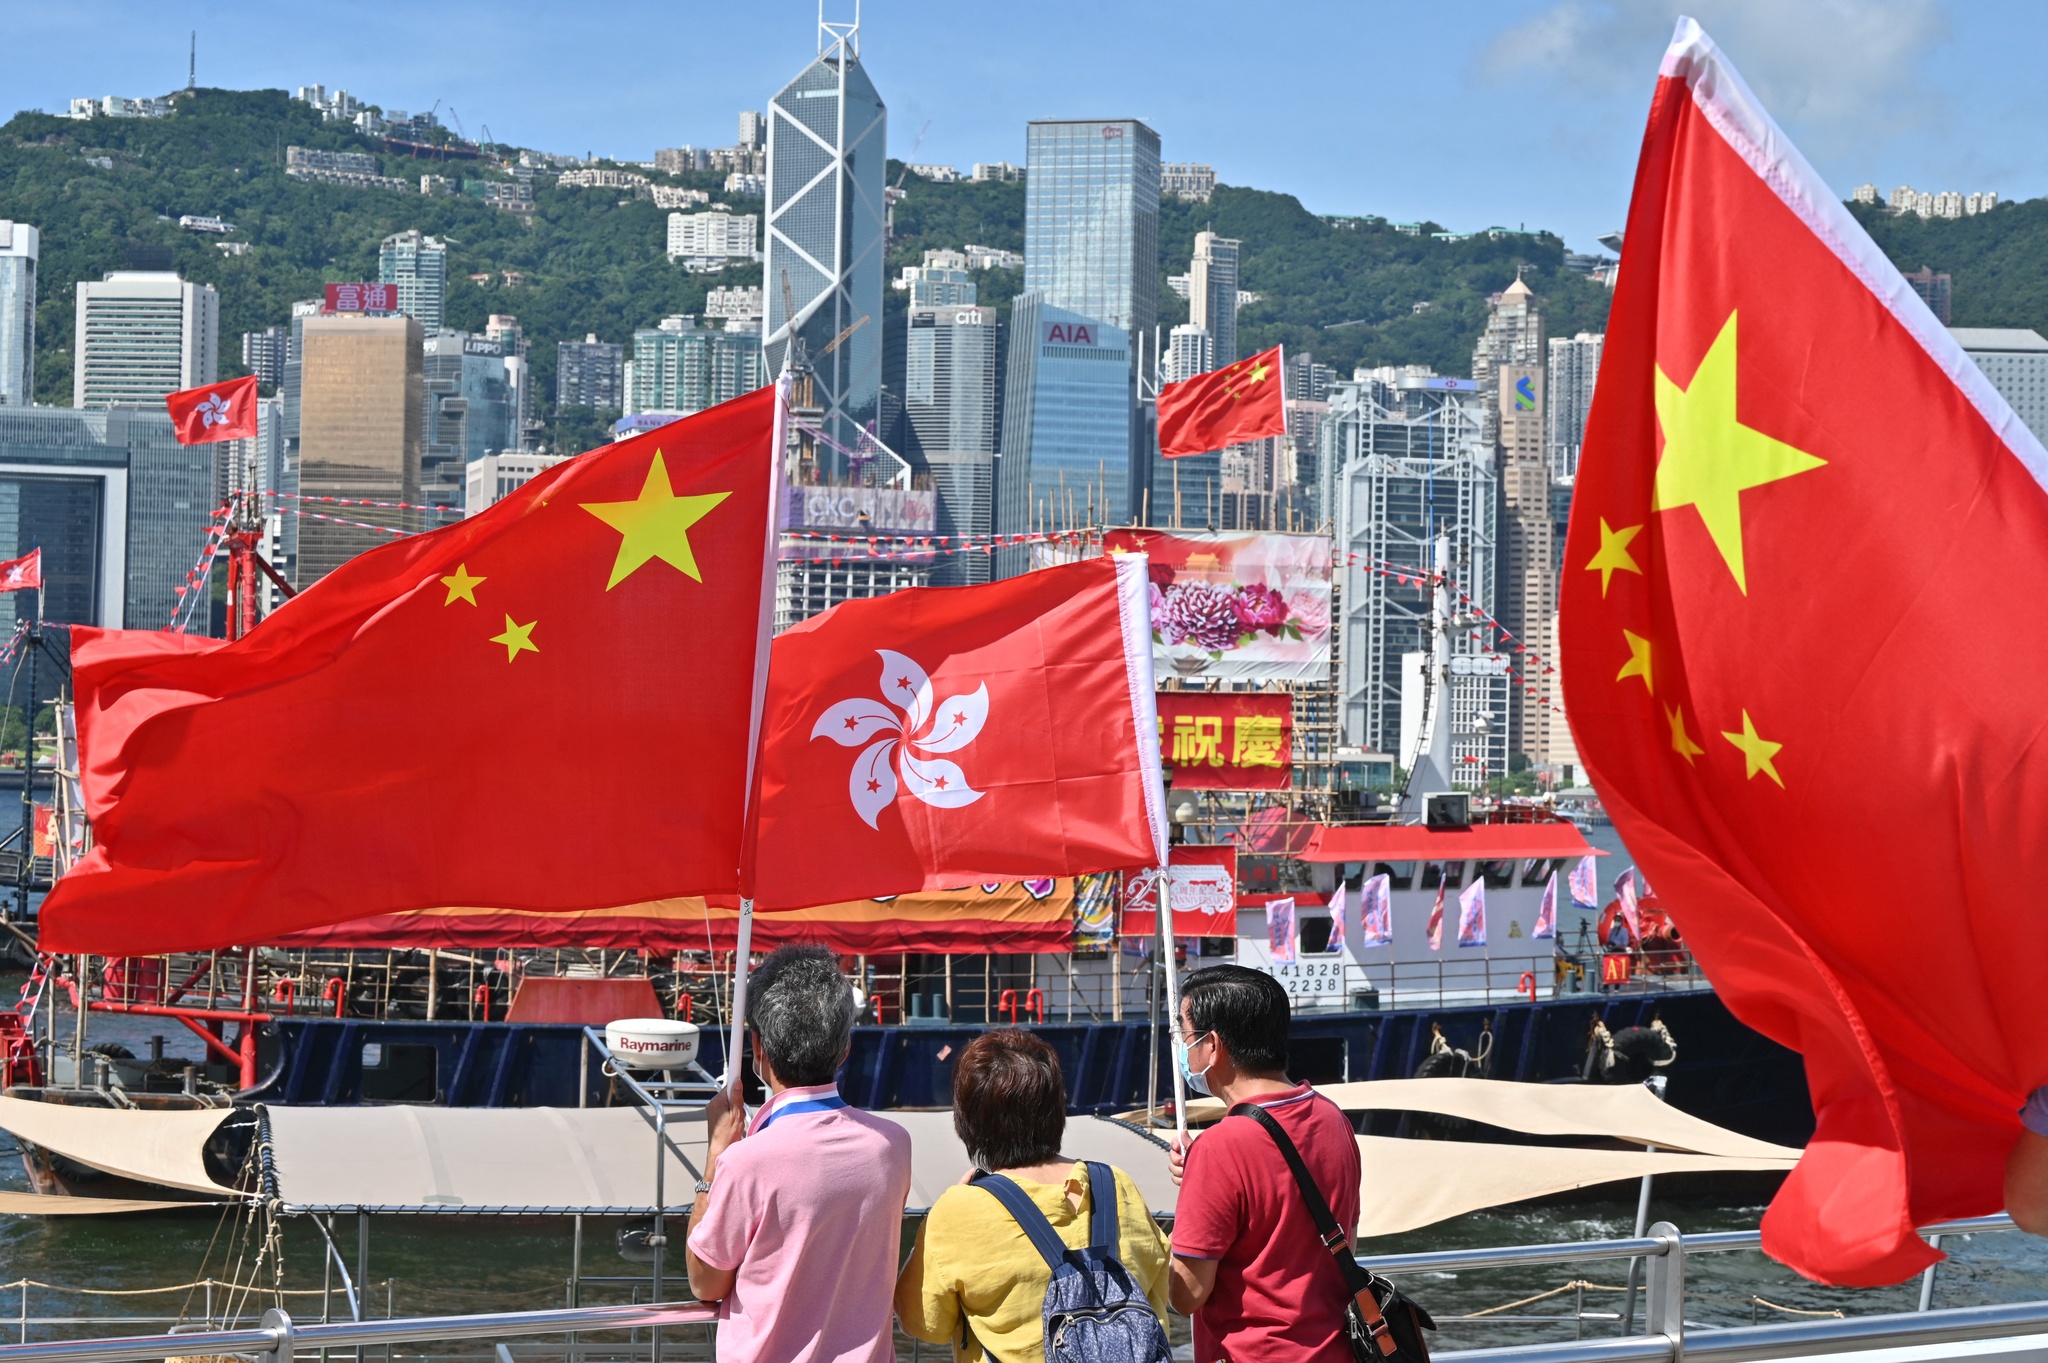 Hồng Kông sau 25 năm về Trung Quốc: Sóng gió và tương lai - ảnh 1